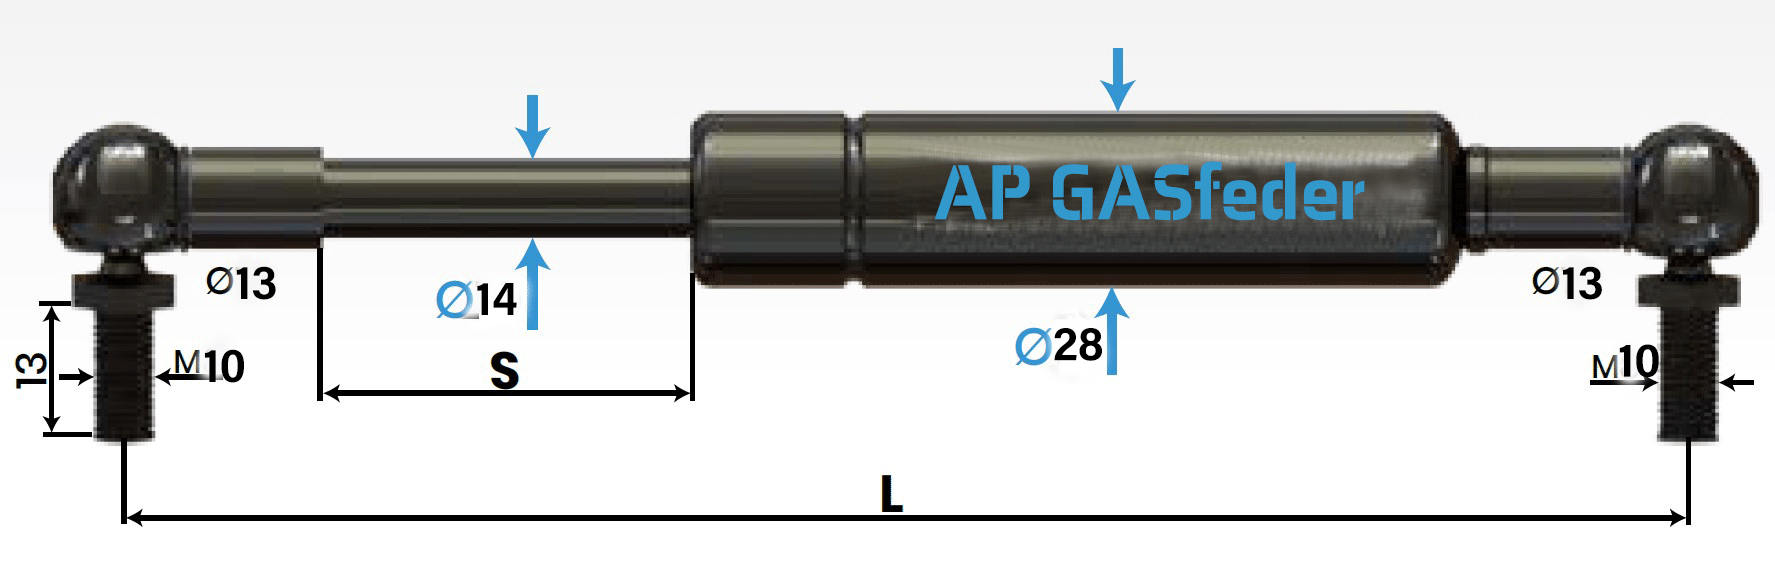 Bild von AP GASfeder 1500N, 14/28, Hub(S): 300 mm, Länge (L): 735 mm,  Alternatvie SRST.2375LO